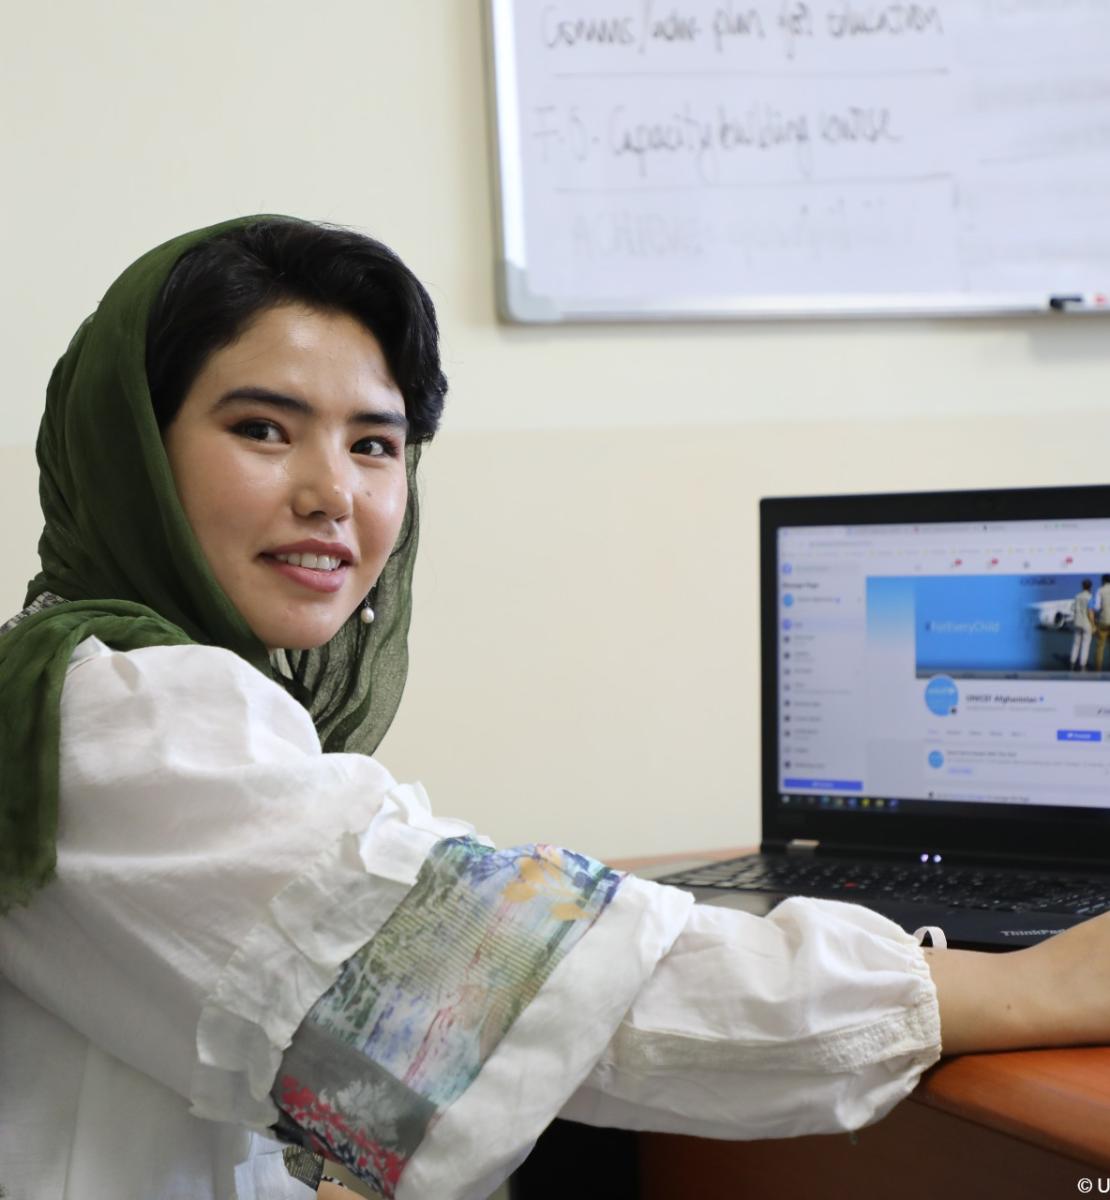 شابة أفغانية تبتسم للكاميرا وفي الخلفية جهاز كمبيوتر محمول على المكتب.